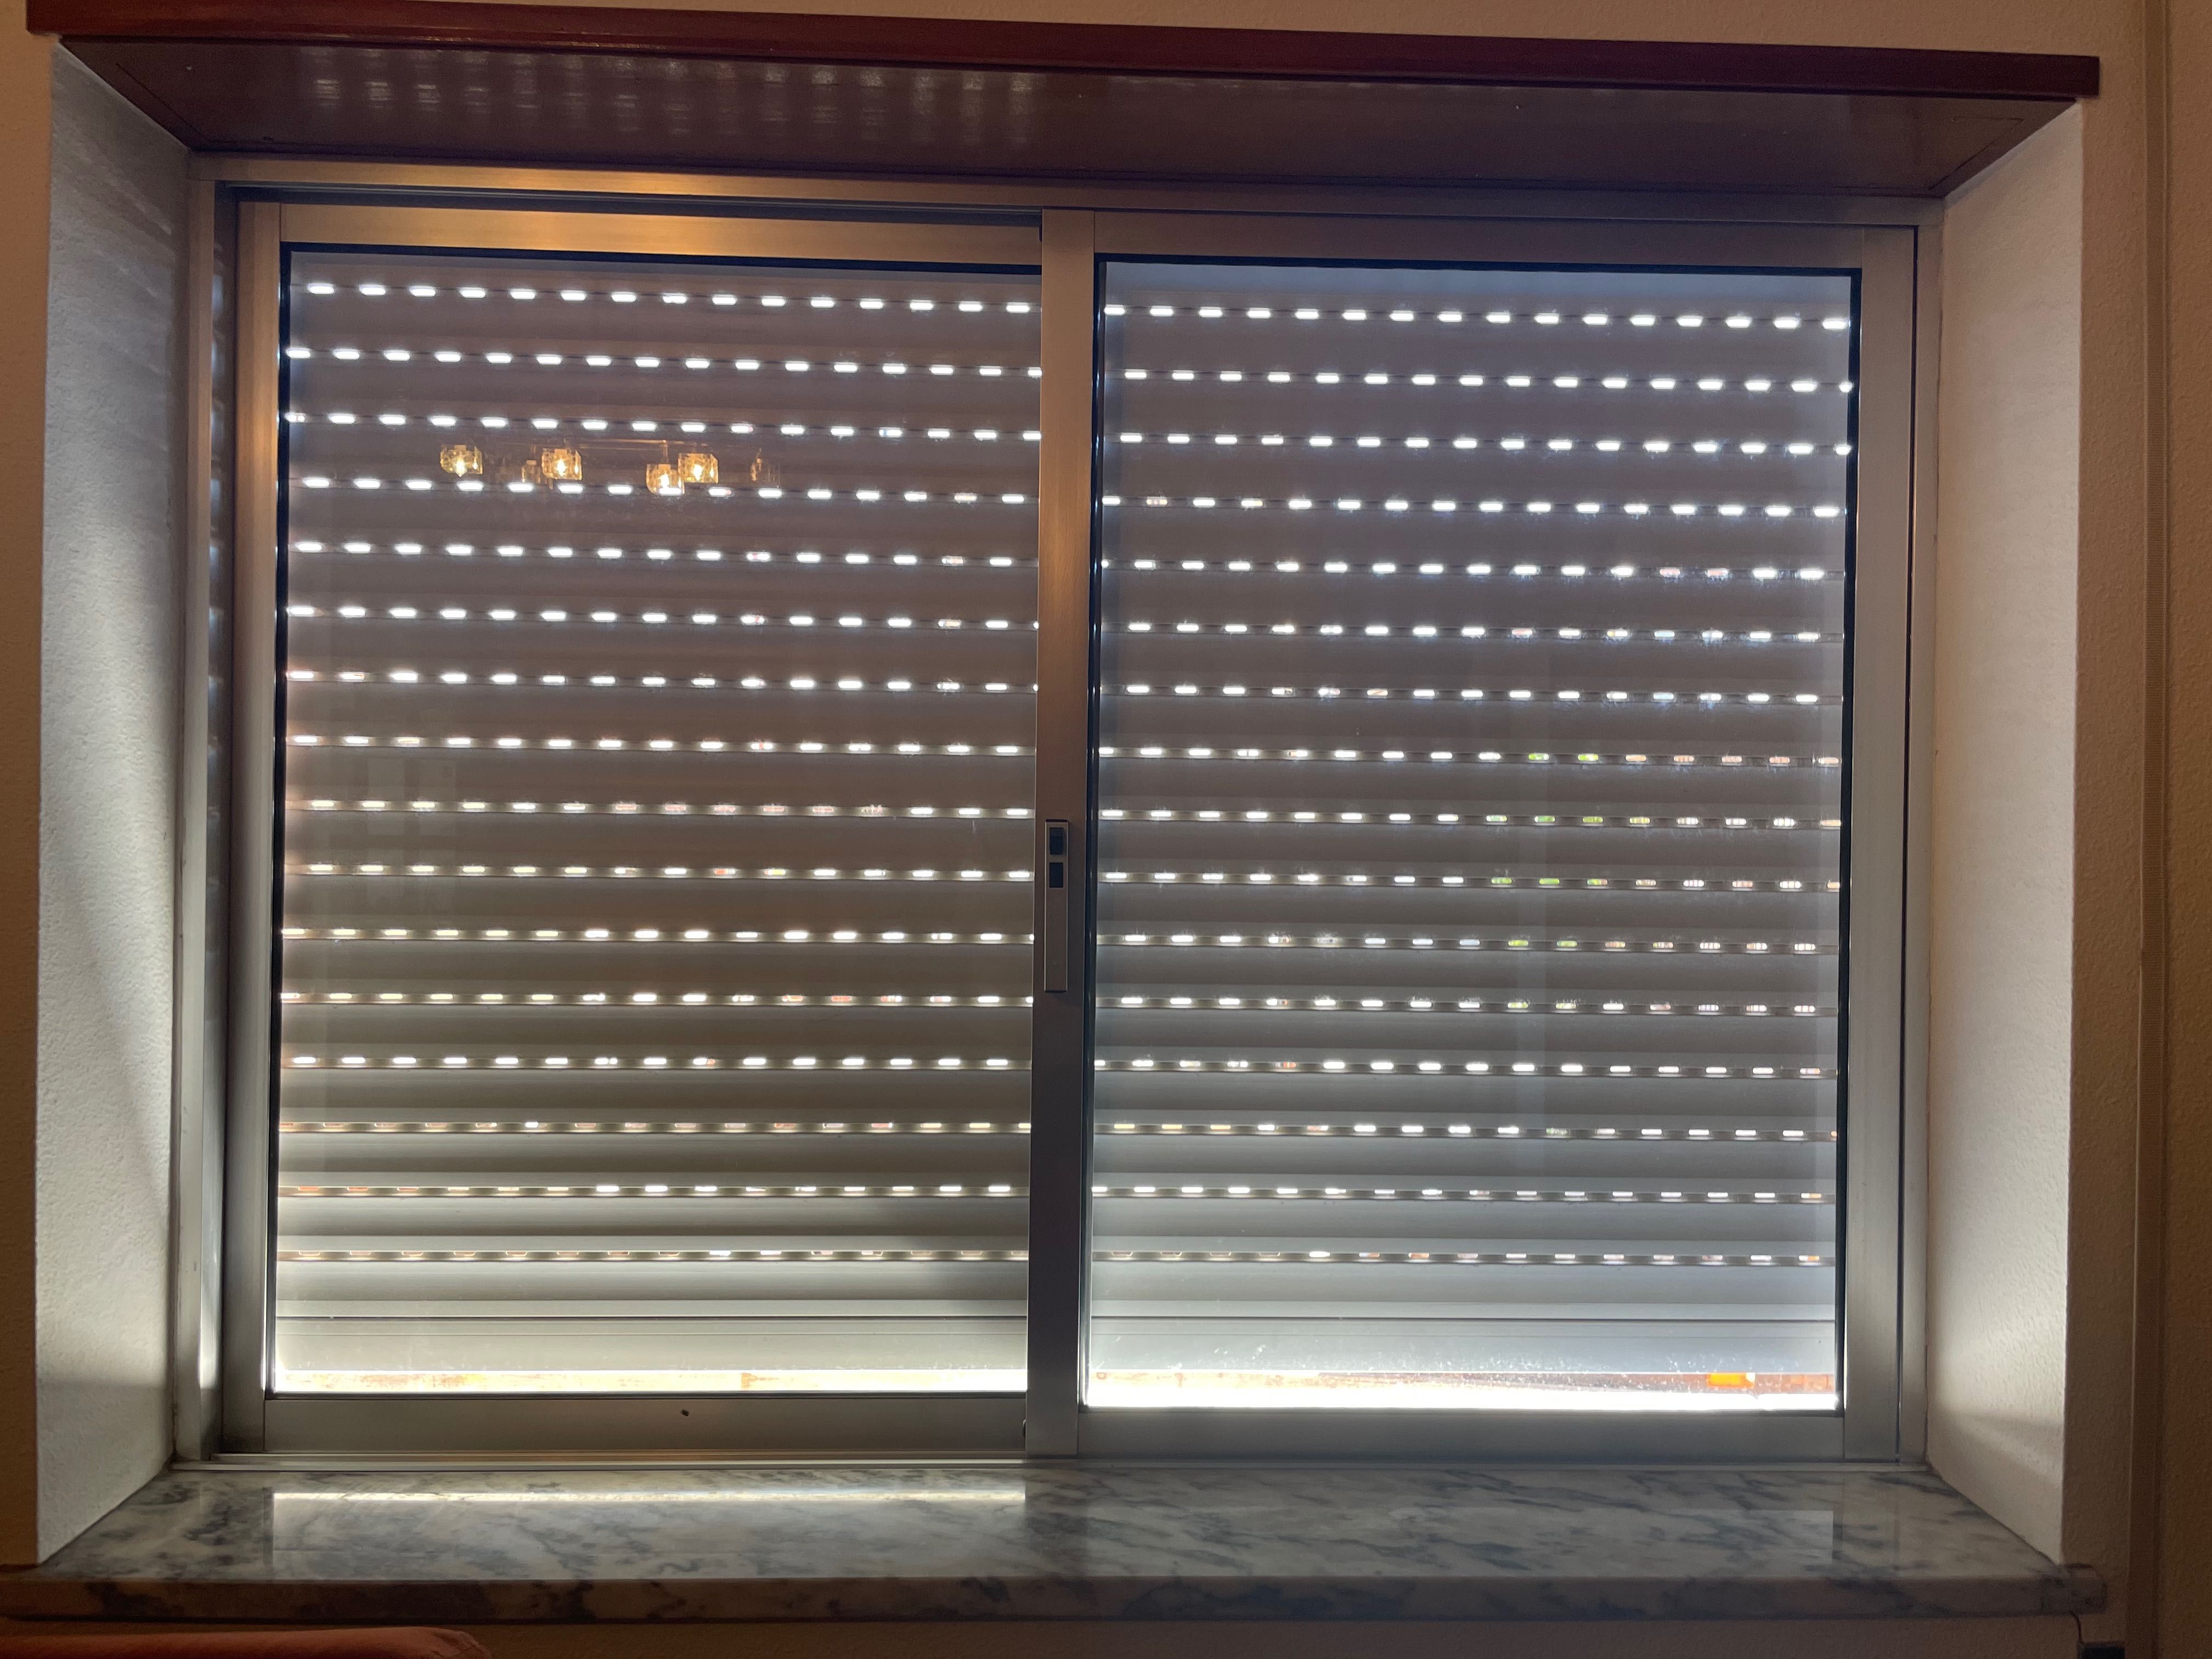 Porta e janelas em alumínio